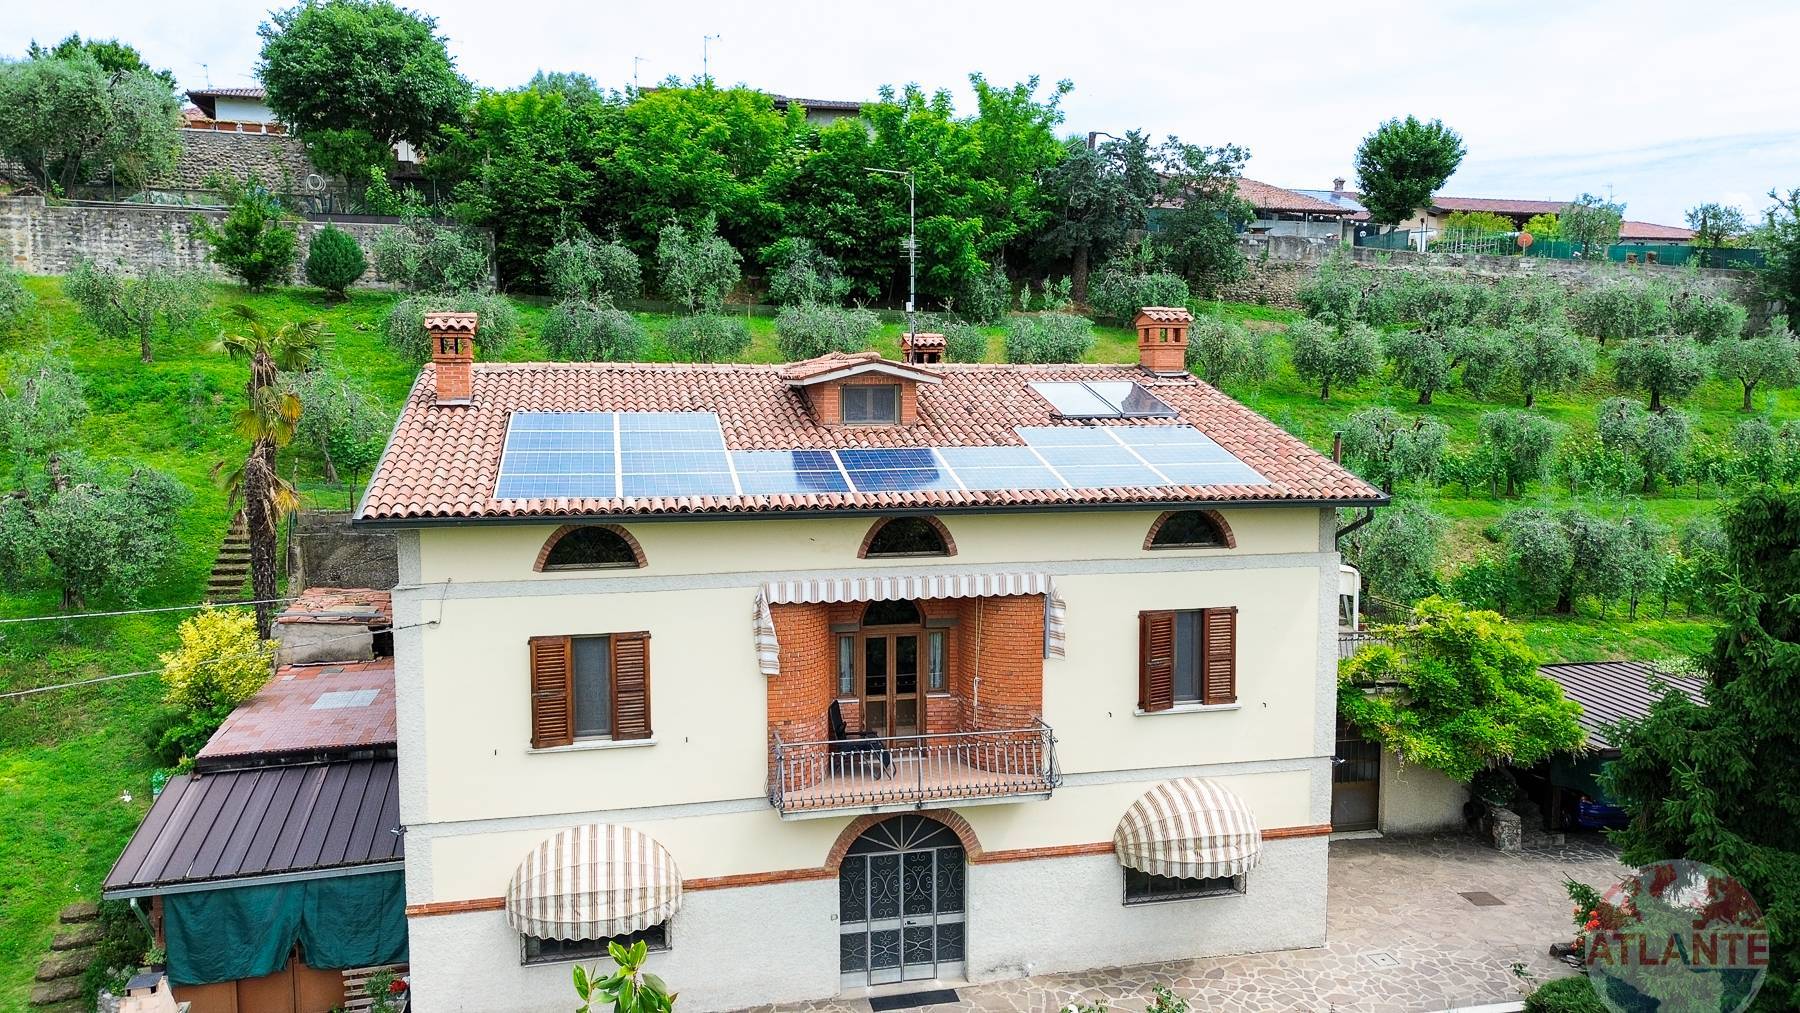 Villa in vendita a Bornato, Cazzago San Martino (BS)